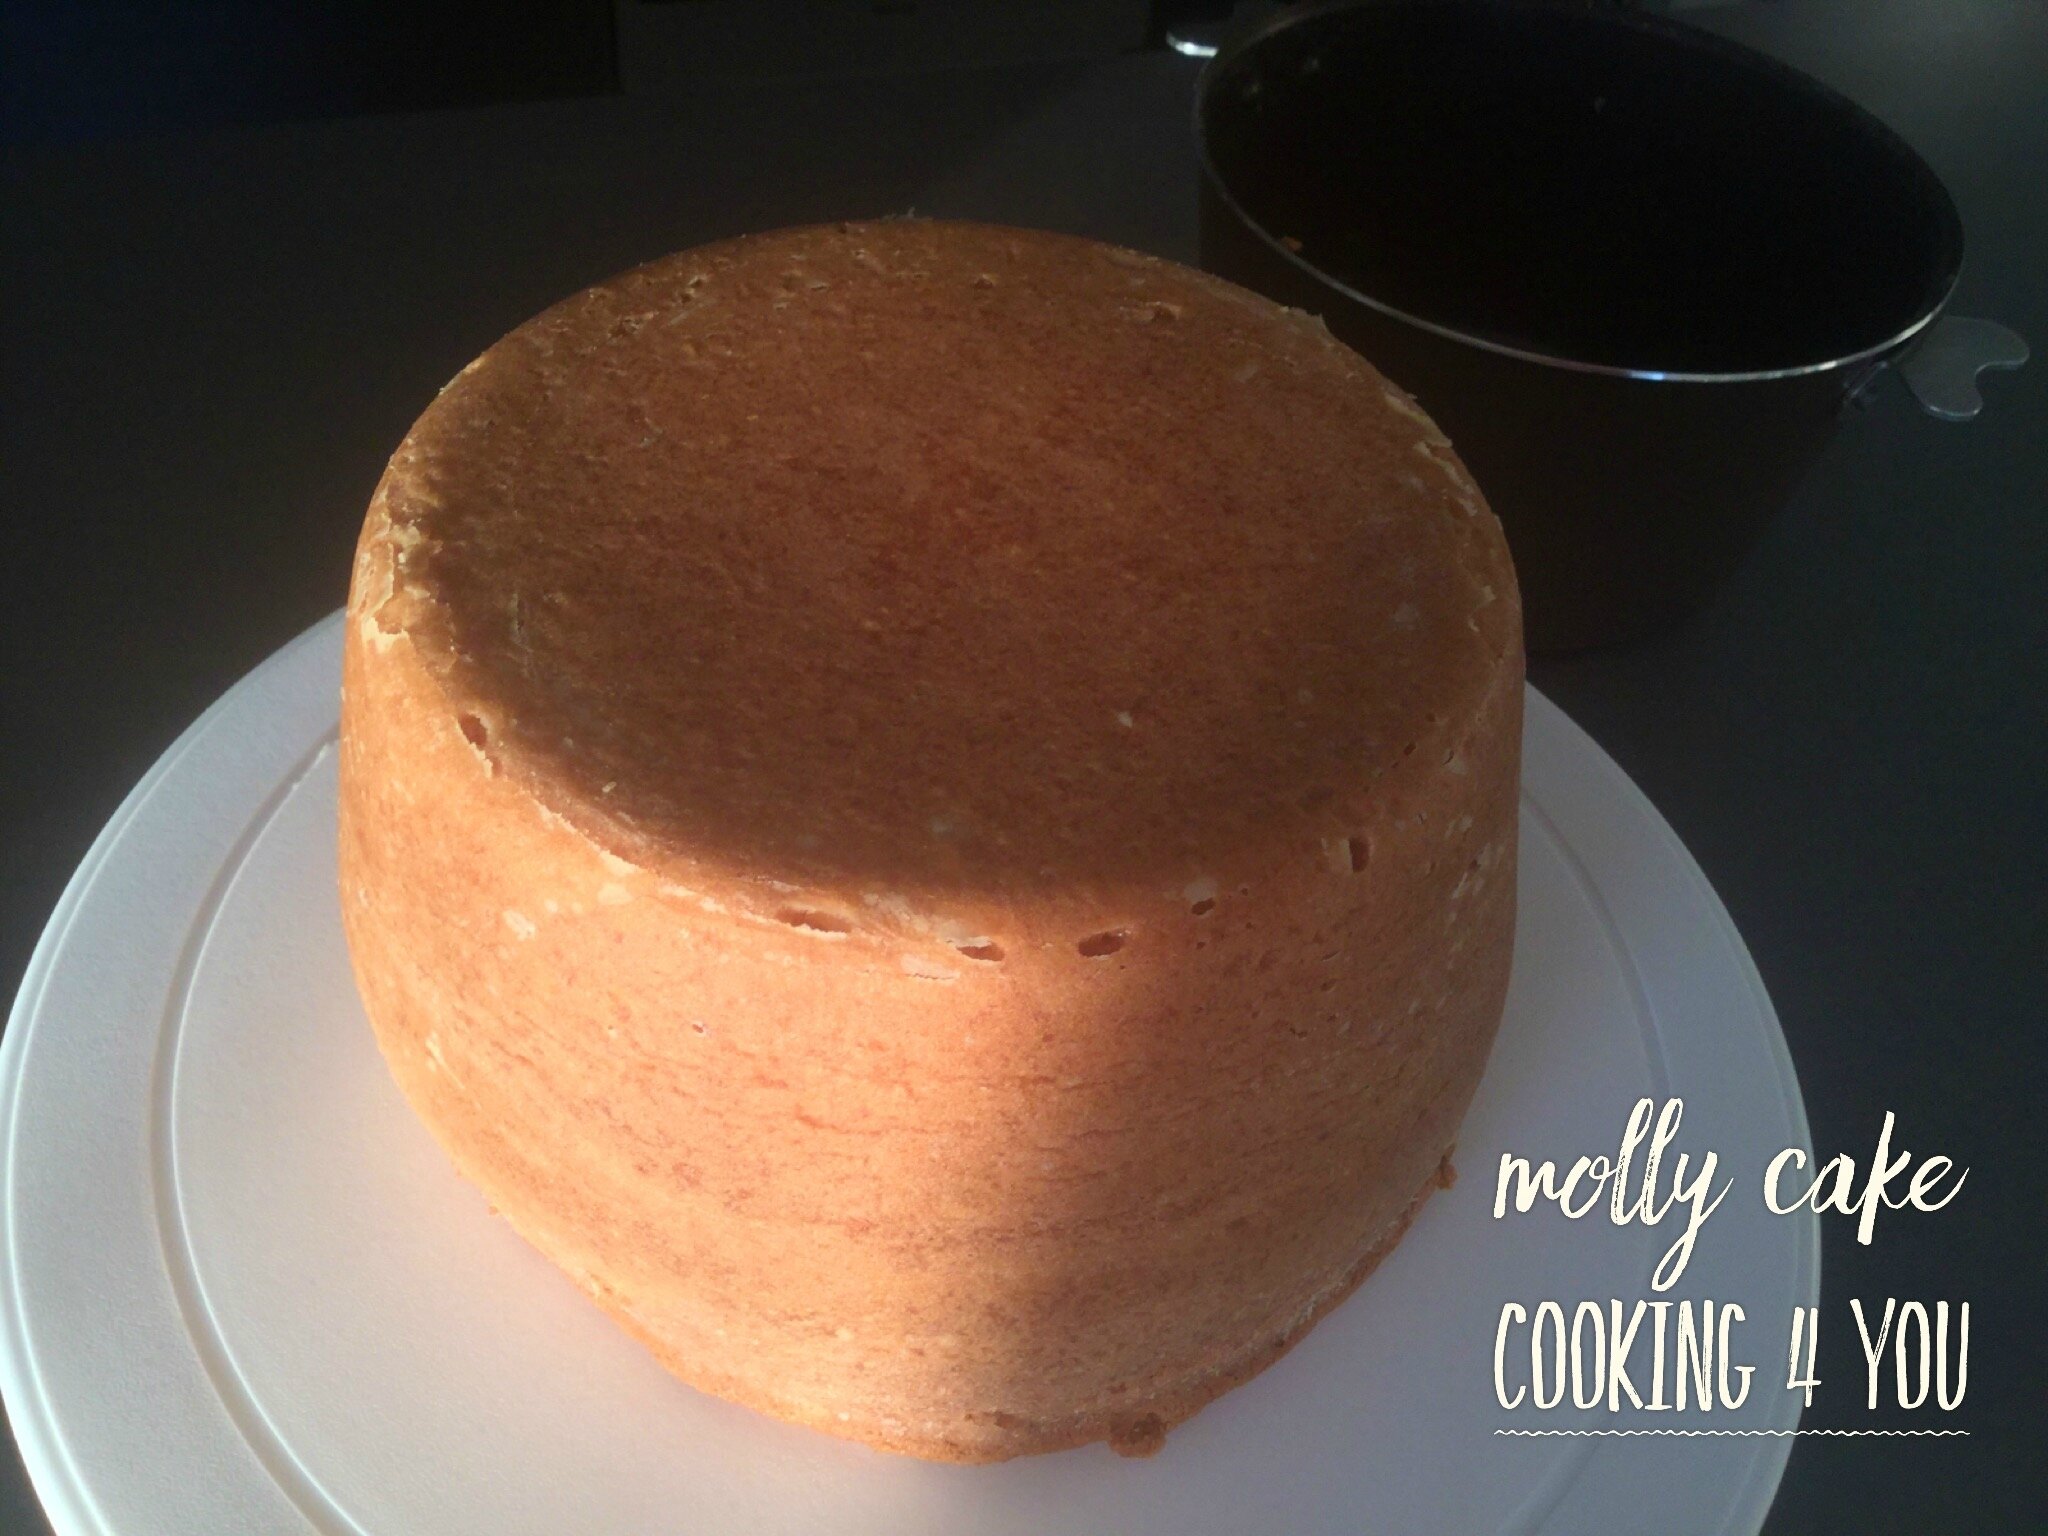 Molly cake, recette de base - Cooking 4 You